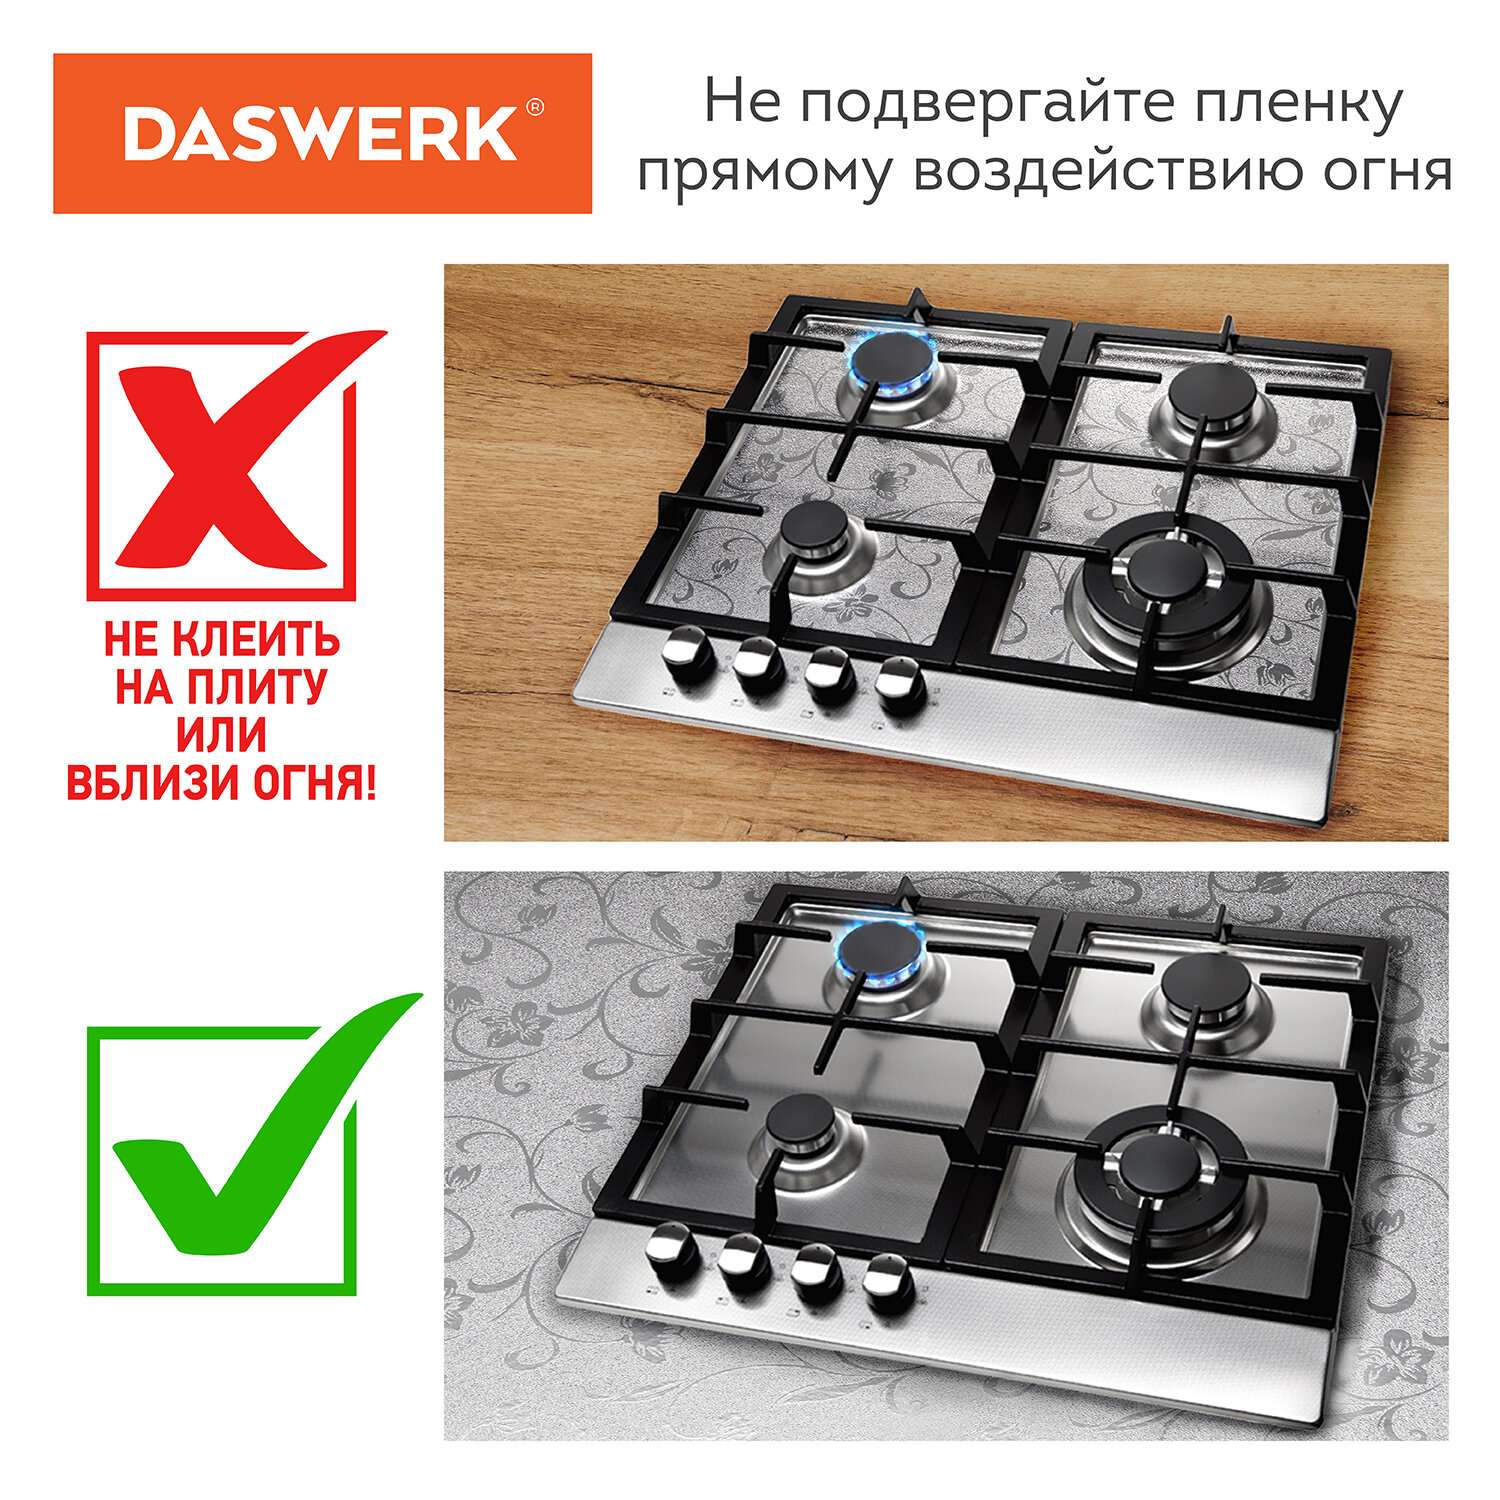 Пленка самоклеющаяся DASWERK алюминиевая фольга защитная для кухни и дома 0.6х3 м - фото 13